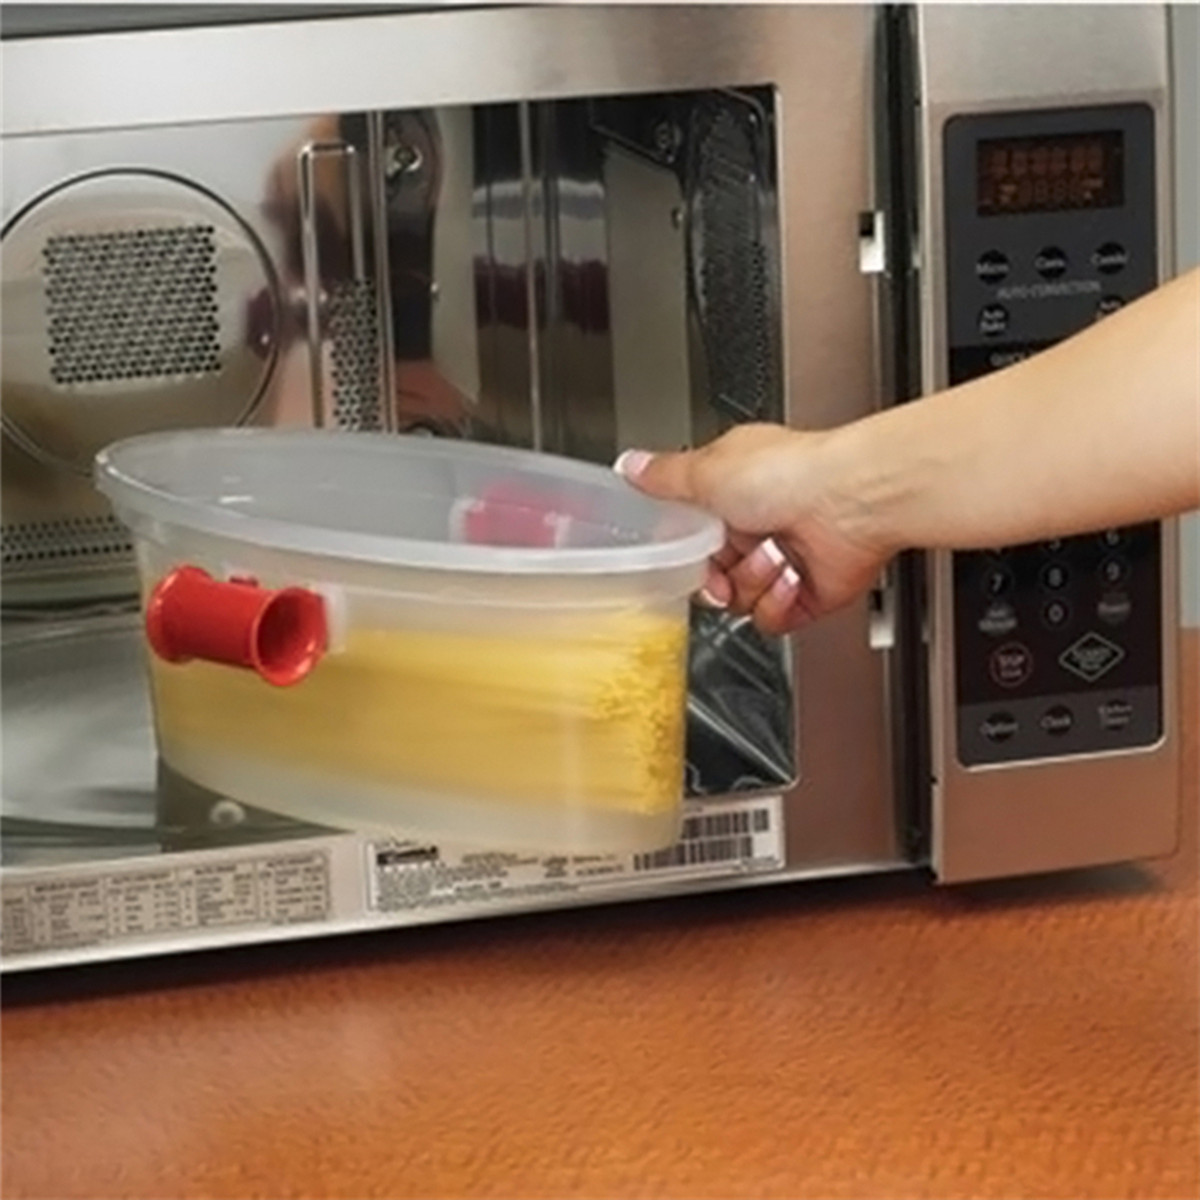 Можно ли греть пластиковую посуду в микроволновке. Посуда для приготовления в микроволновой печи. Контейнер для приготовления в СВЧ. Посуда для готовки в микроволновок. Контейнеры для разогрева в микроволновке.